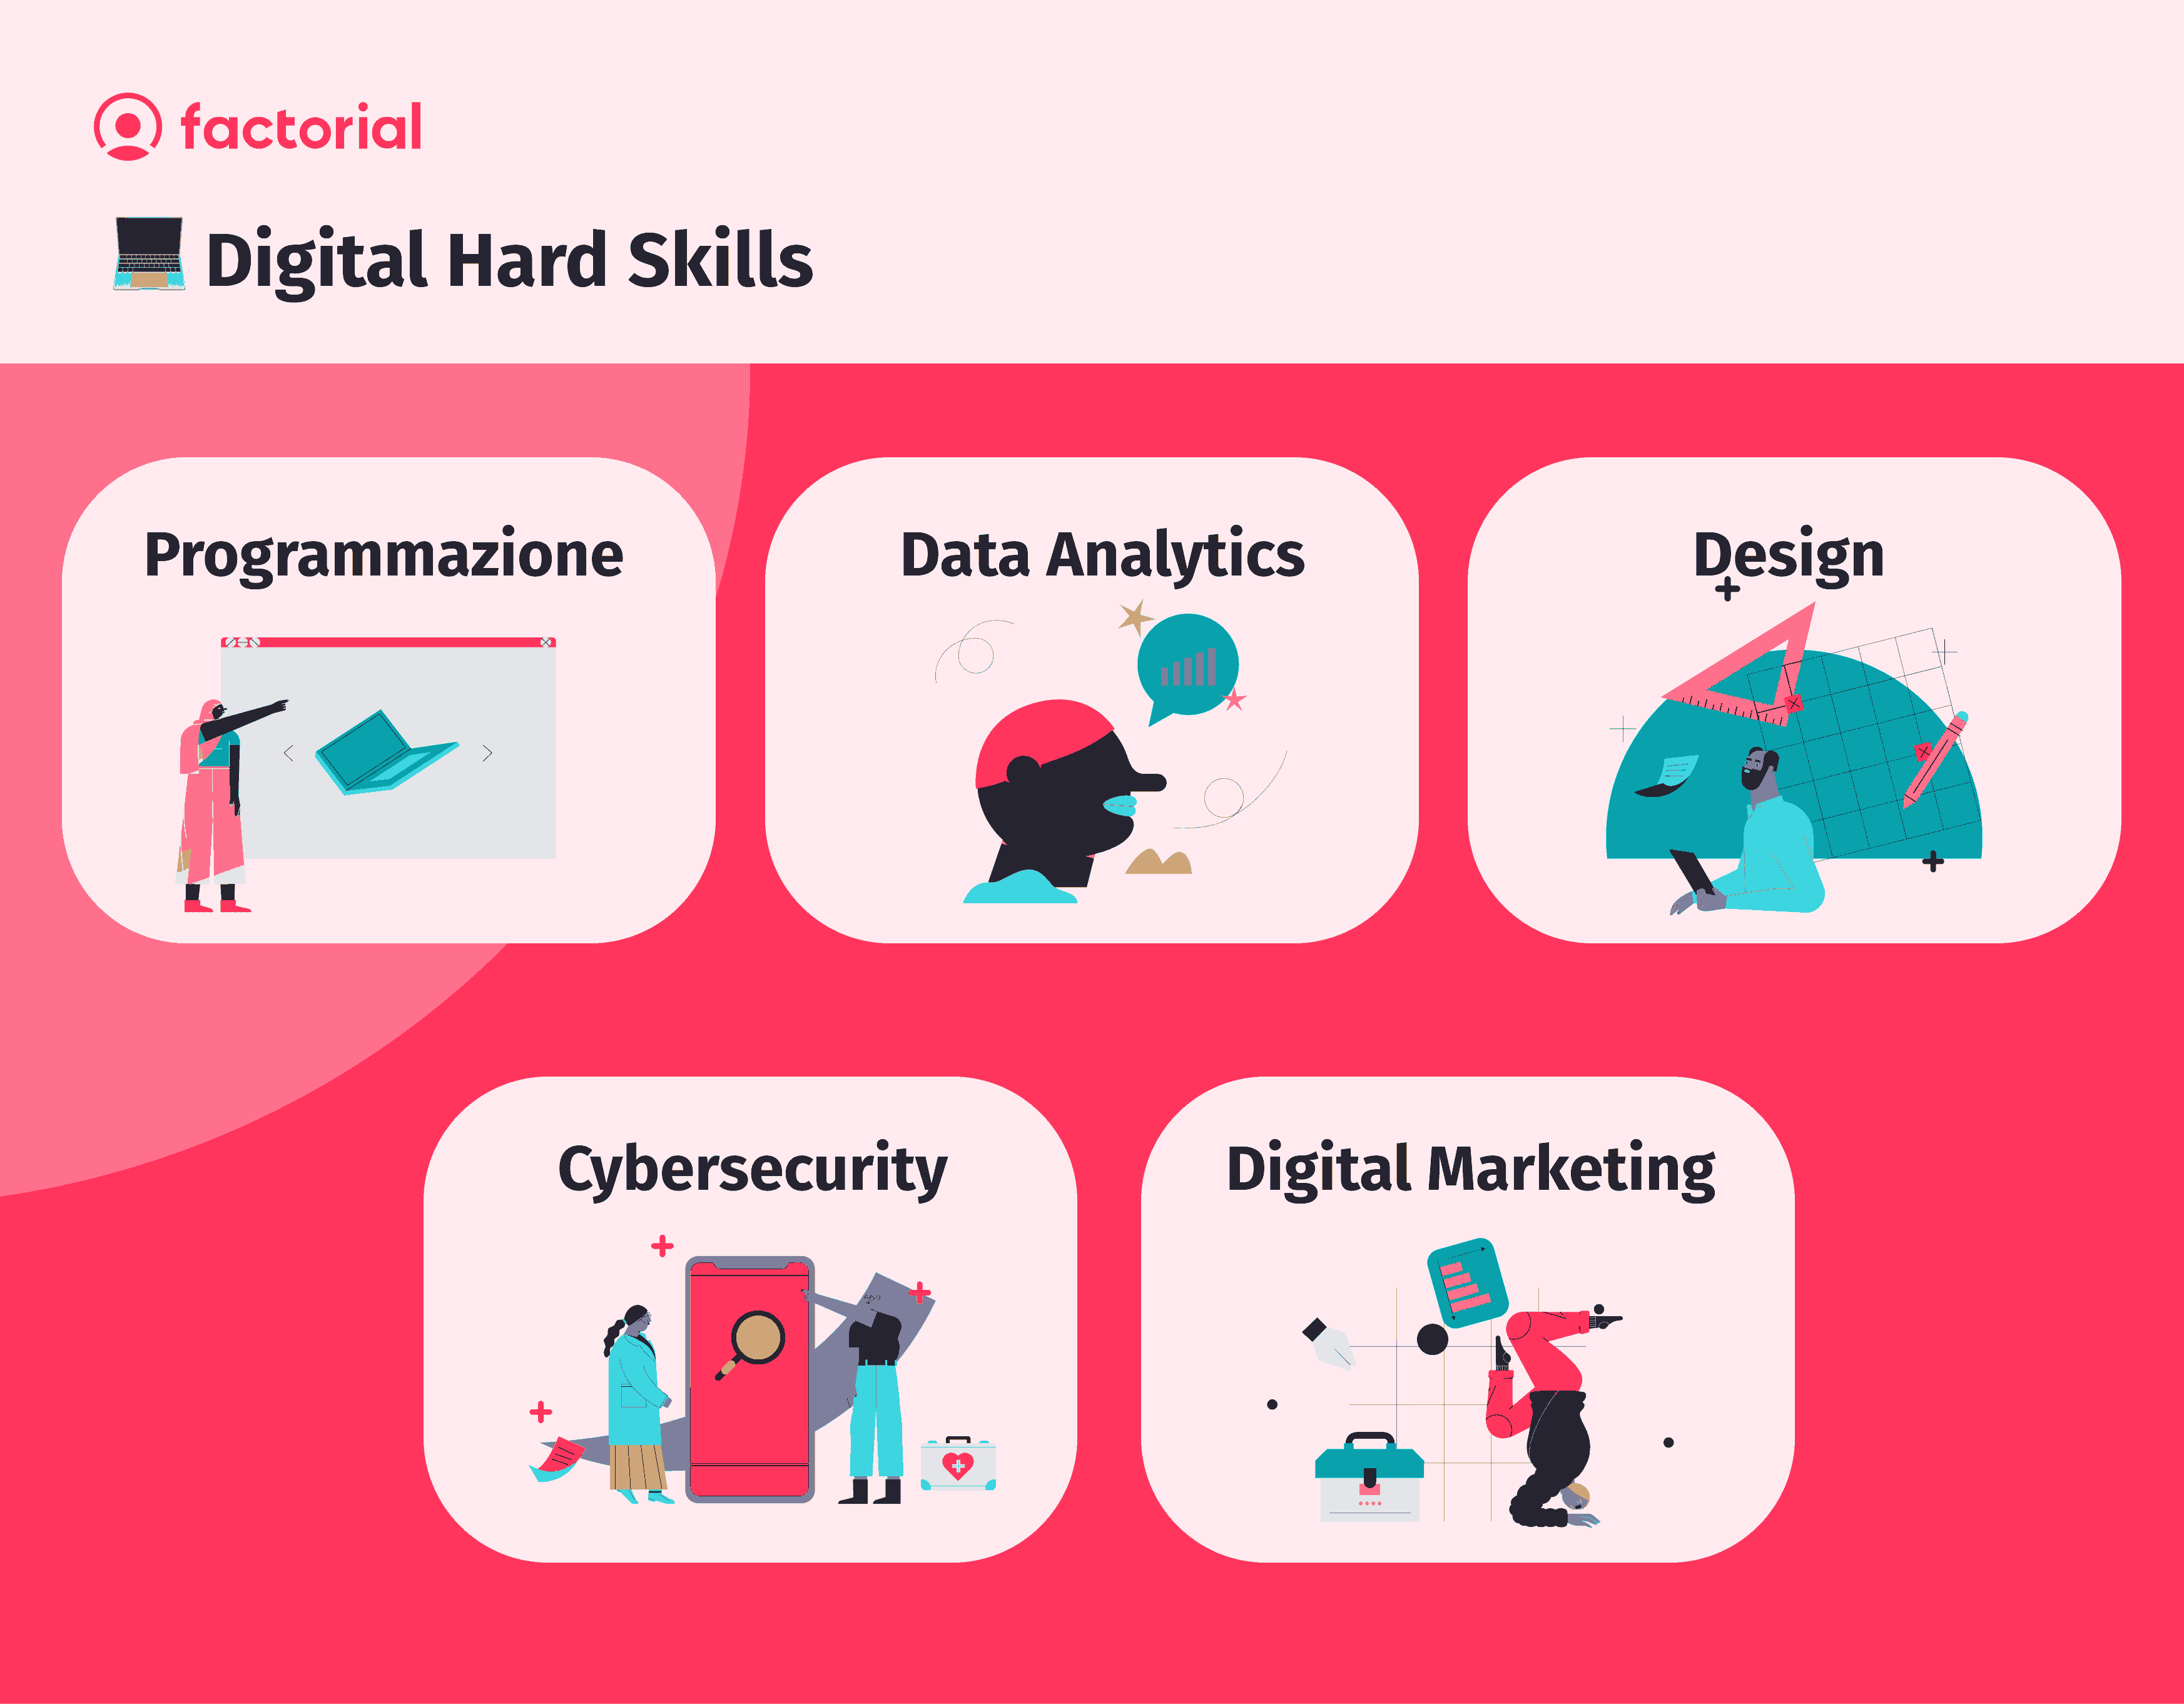 Le 5 principali digital hard skills sono: la programmazione, data analytics, design, cybersecurity e marketing digitale